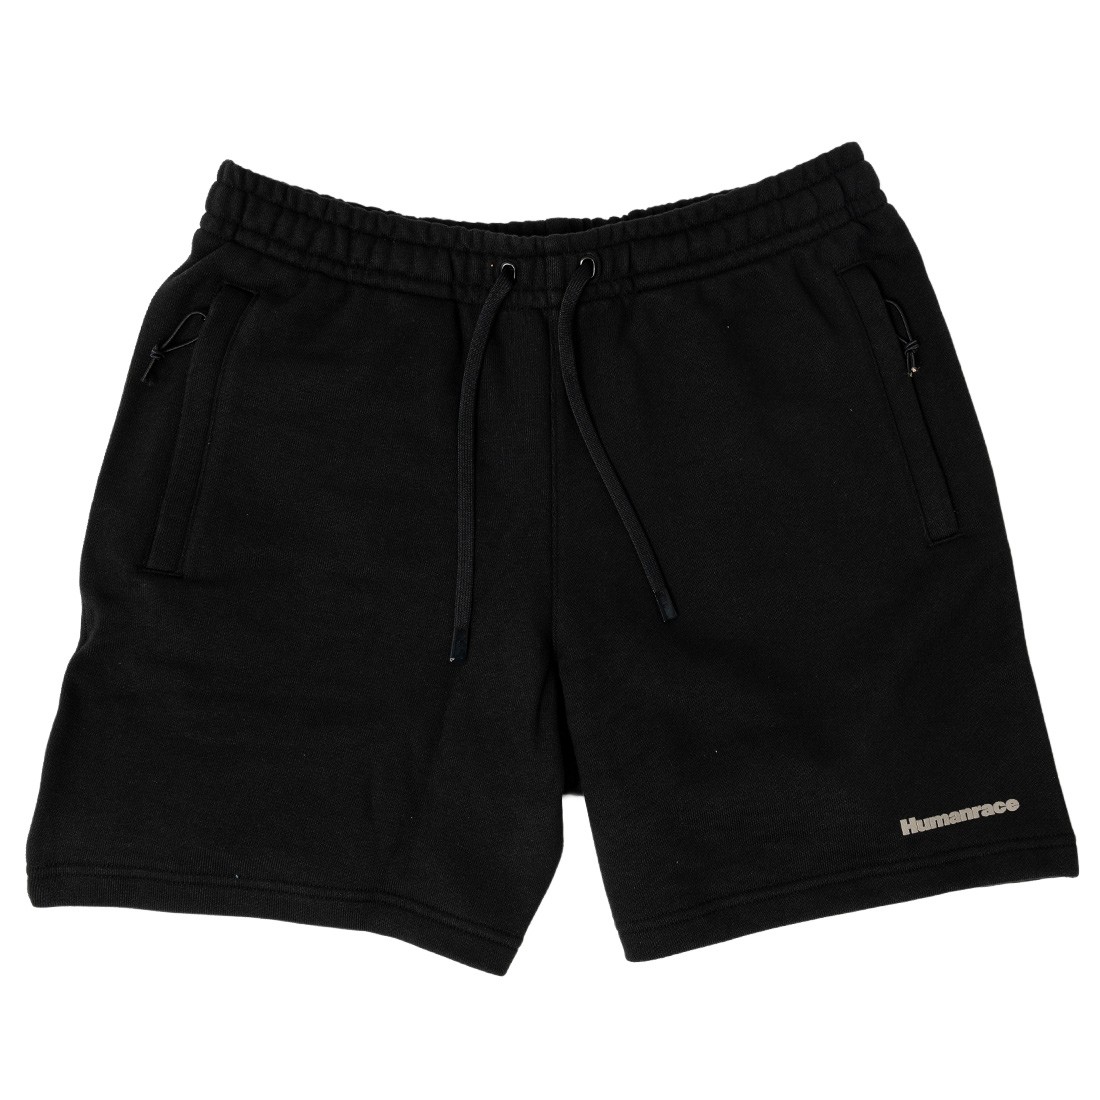 Adidas x Pharrell Williams Men Basics Shorts black